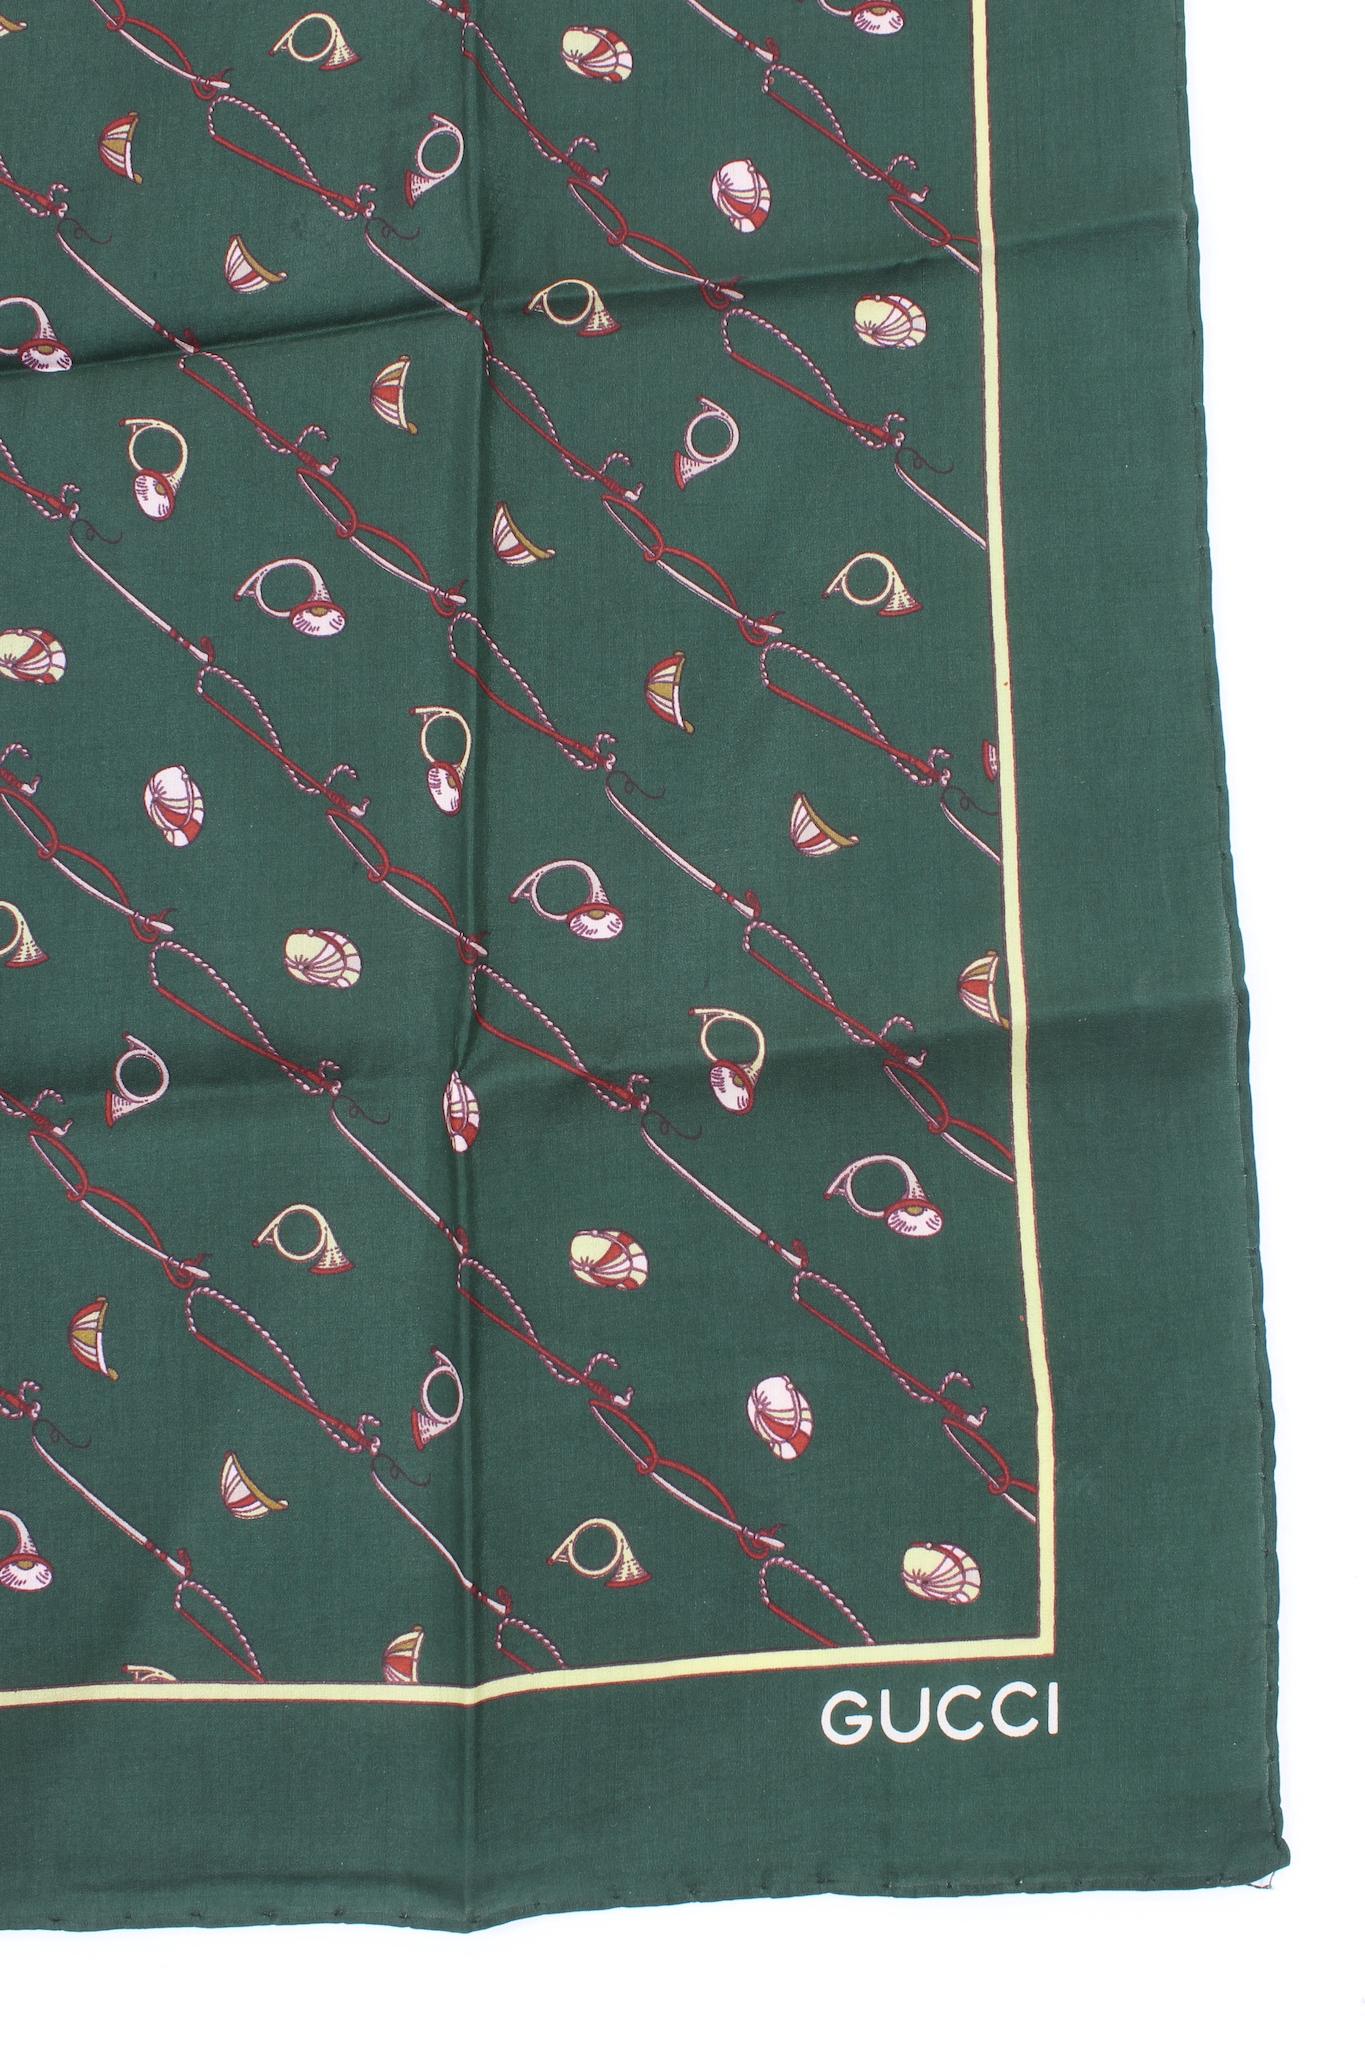 Gucci-Schal aus den 70ern. Grüne und burgunderrote Farbe mit Reitermotiven, 100% Seidenstoff. Hergestellt in Italien.

 

Maße: 56 x 56 cm